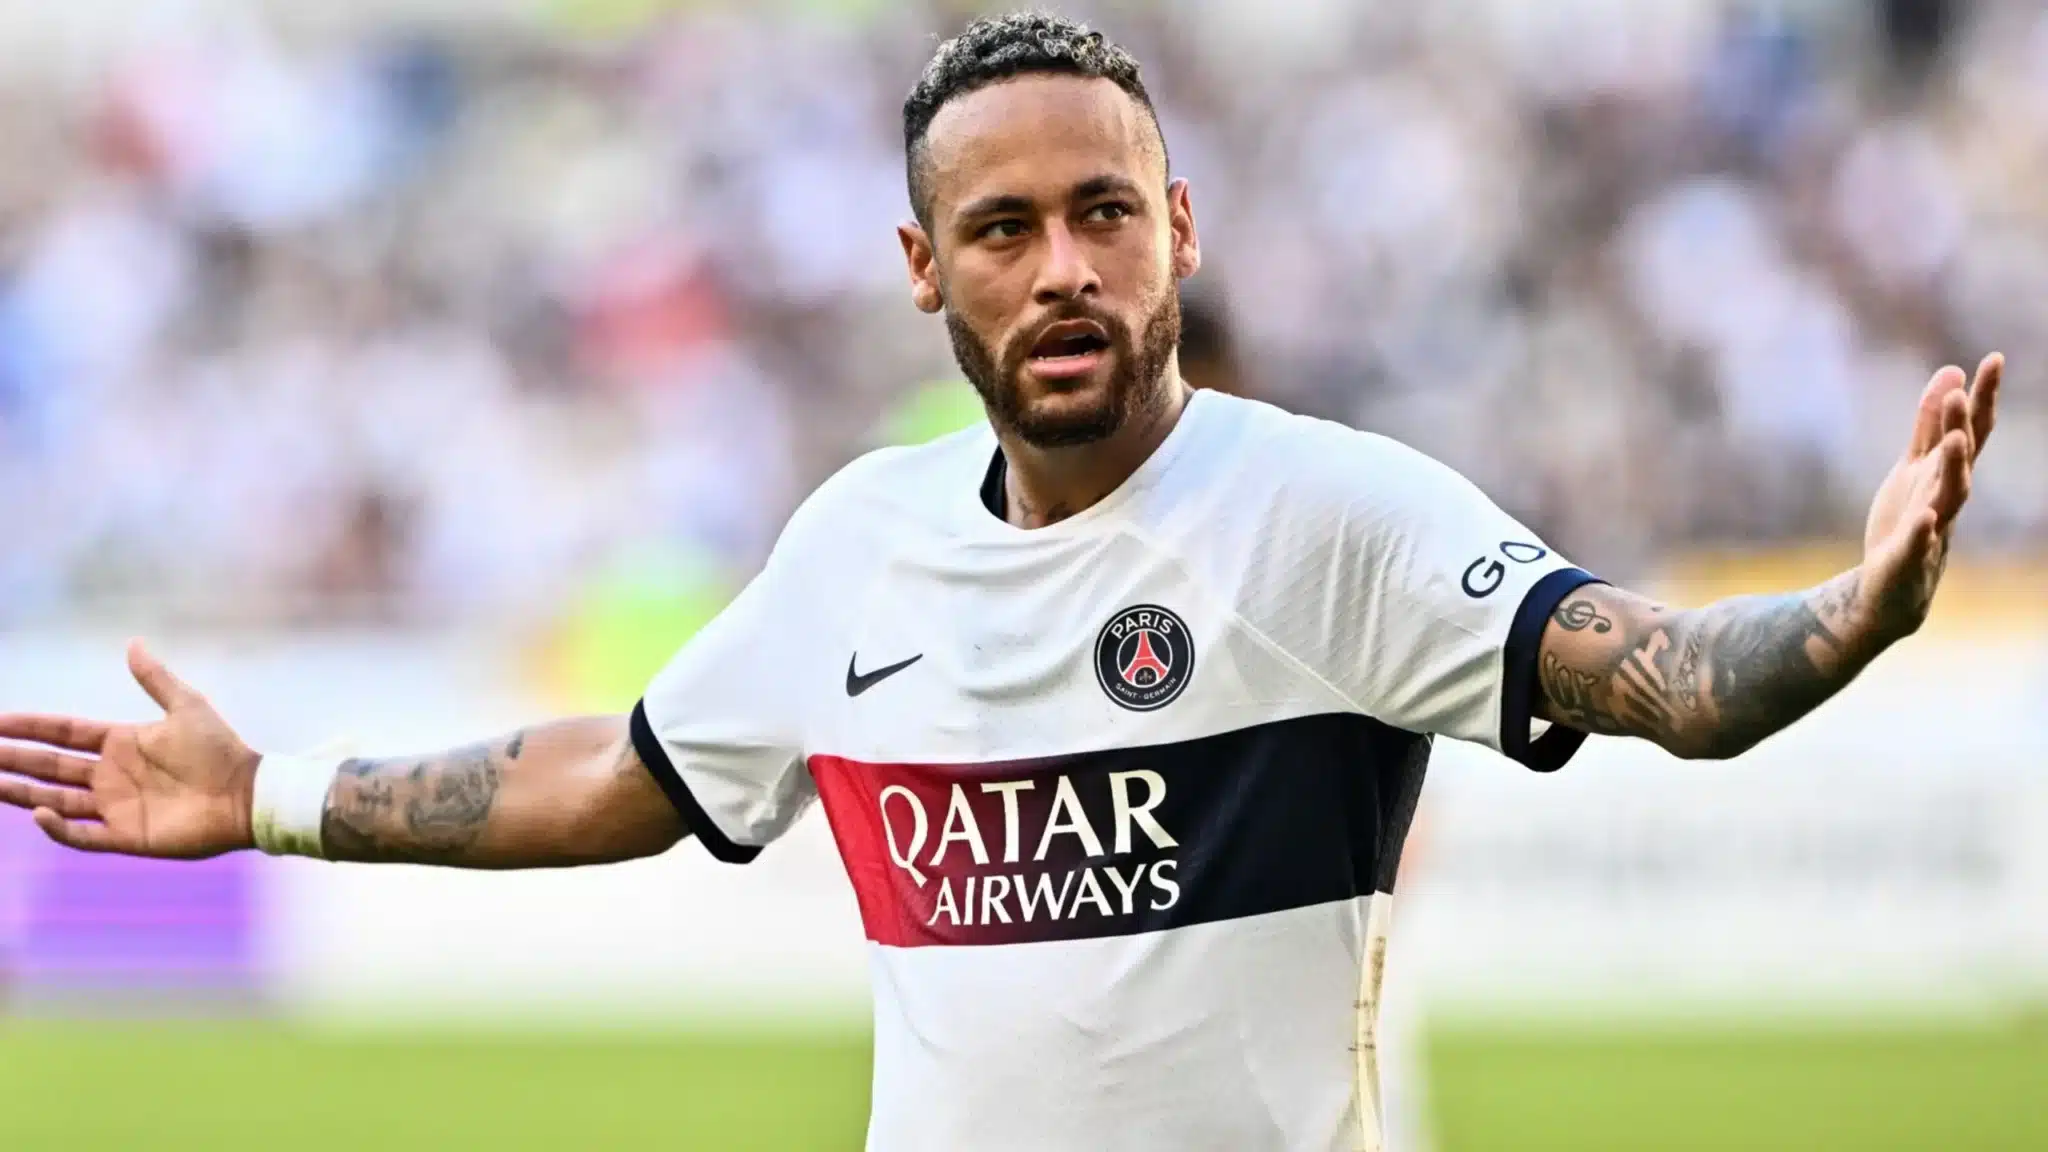 Neymar sur le départ : son entourage met les choses au clair avec le PSG « C’est ça qu’il fera »